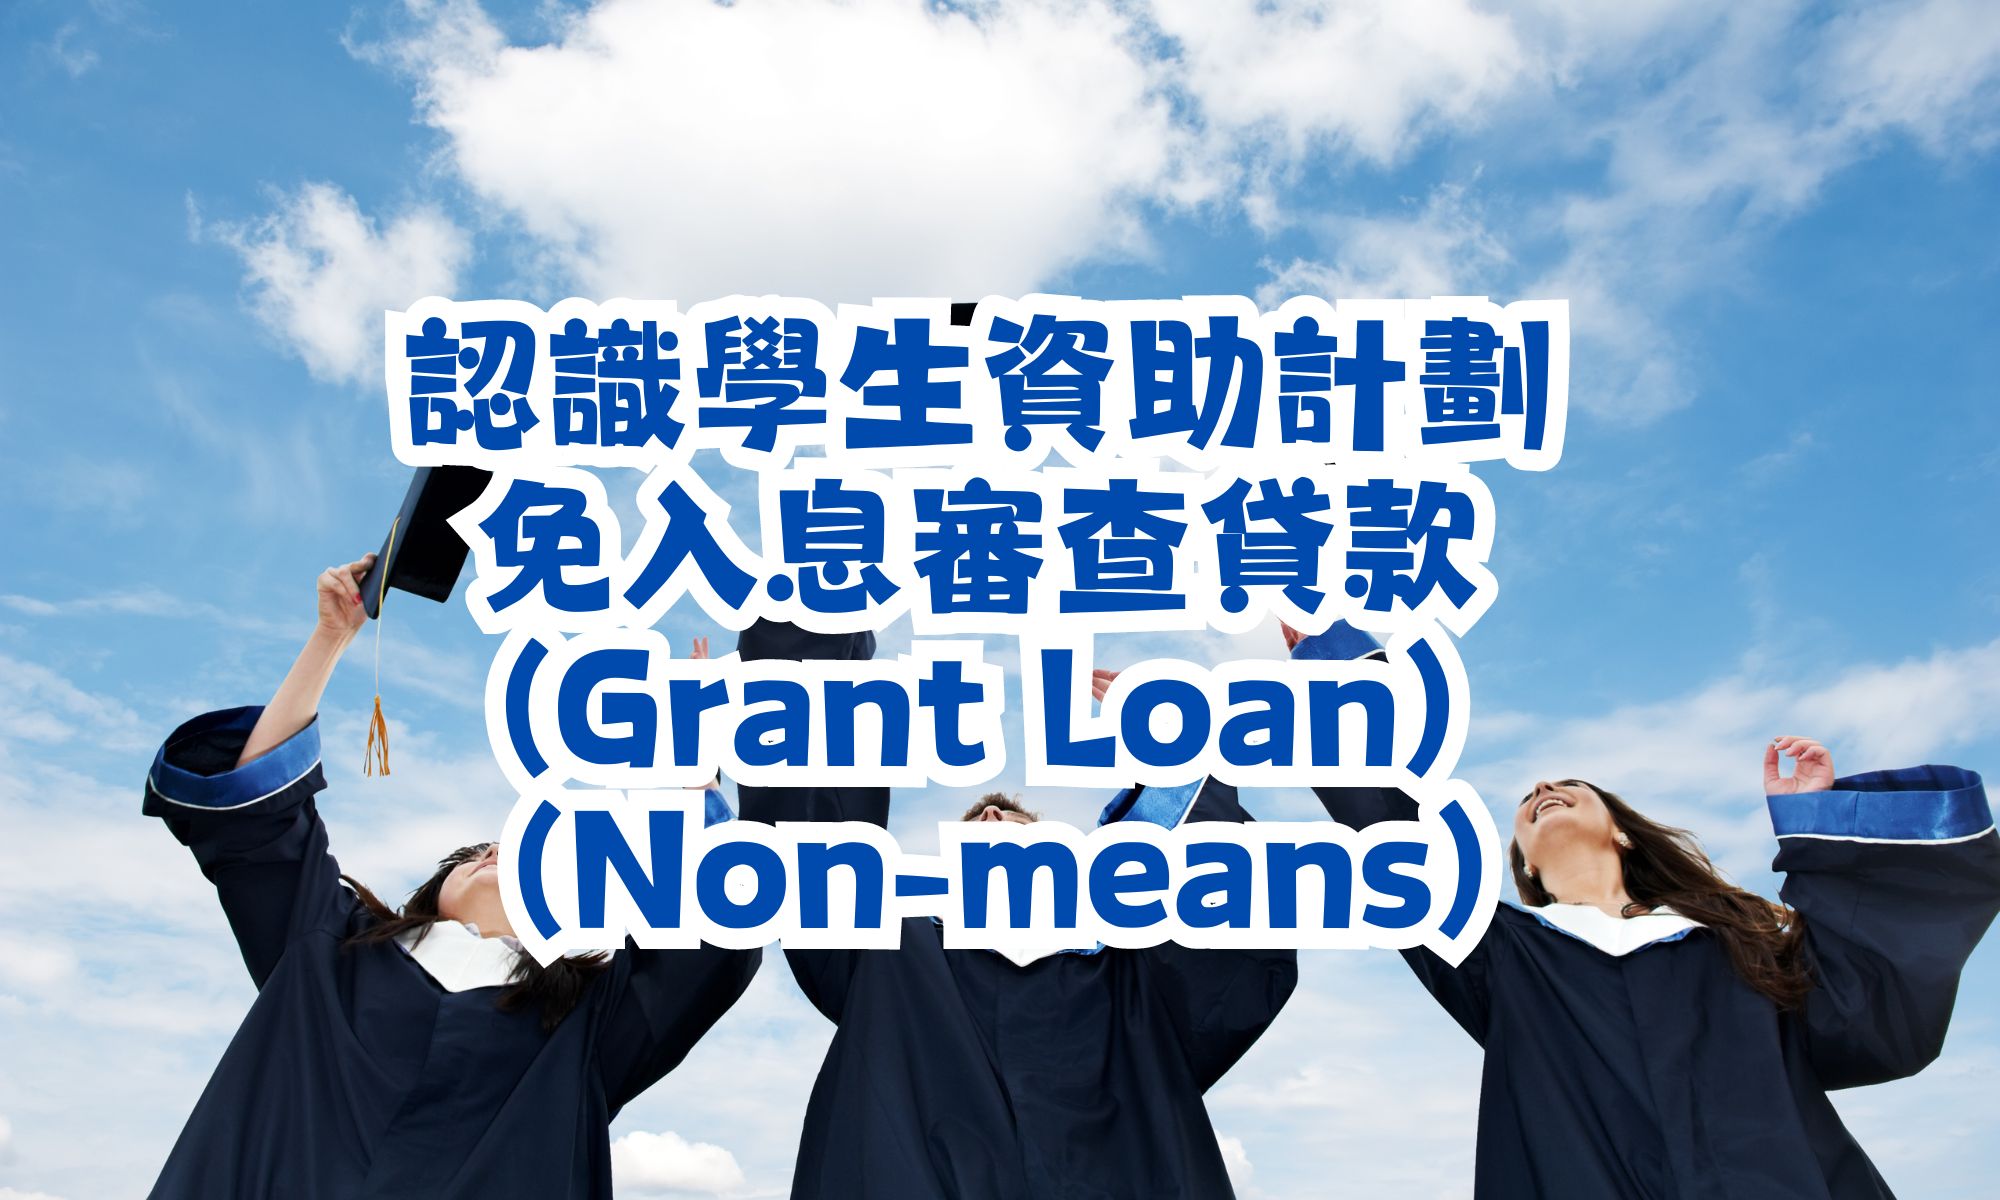 認識學生資助計劃 (Grant Loan) 免入息審查貸款 (Non-means)